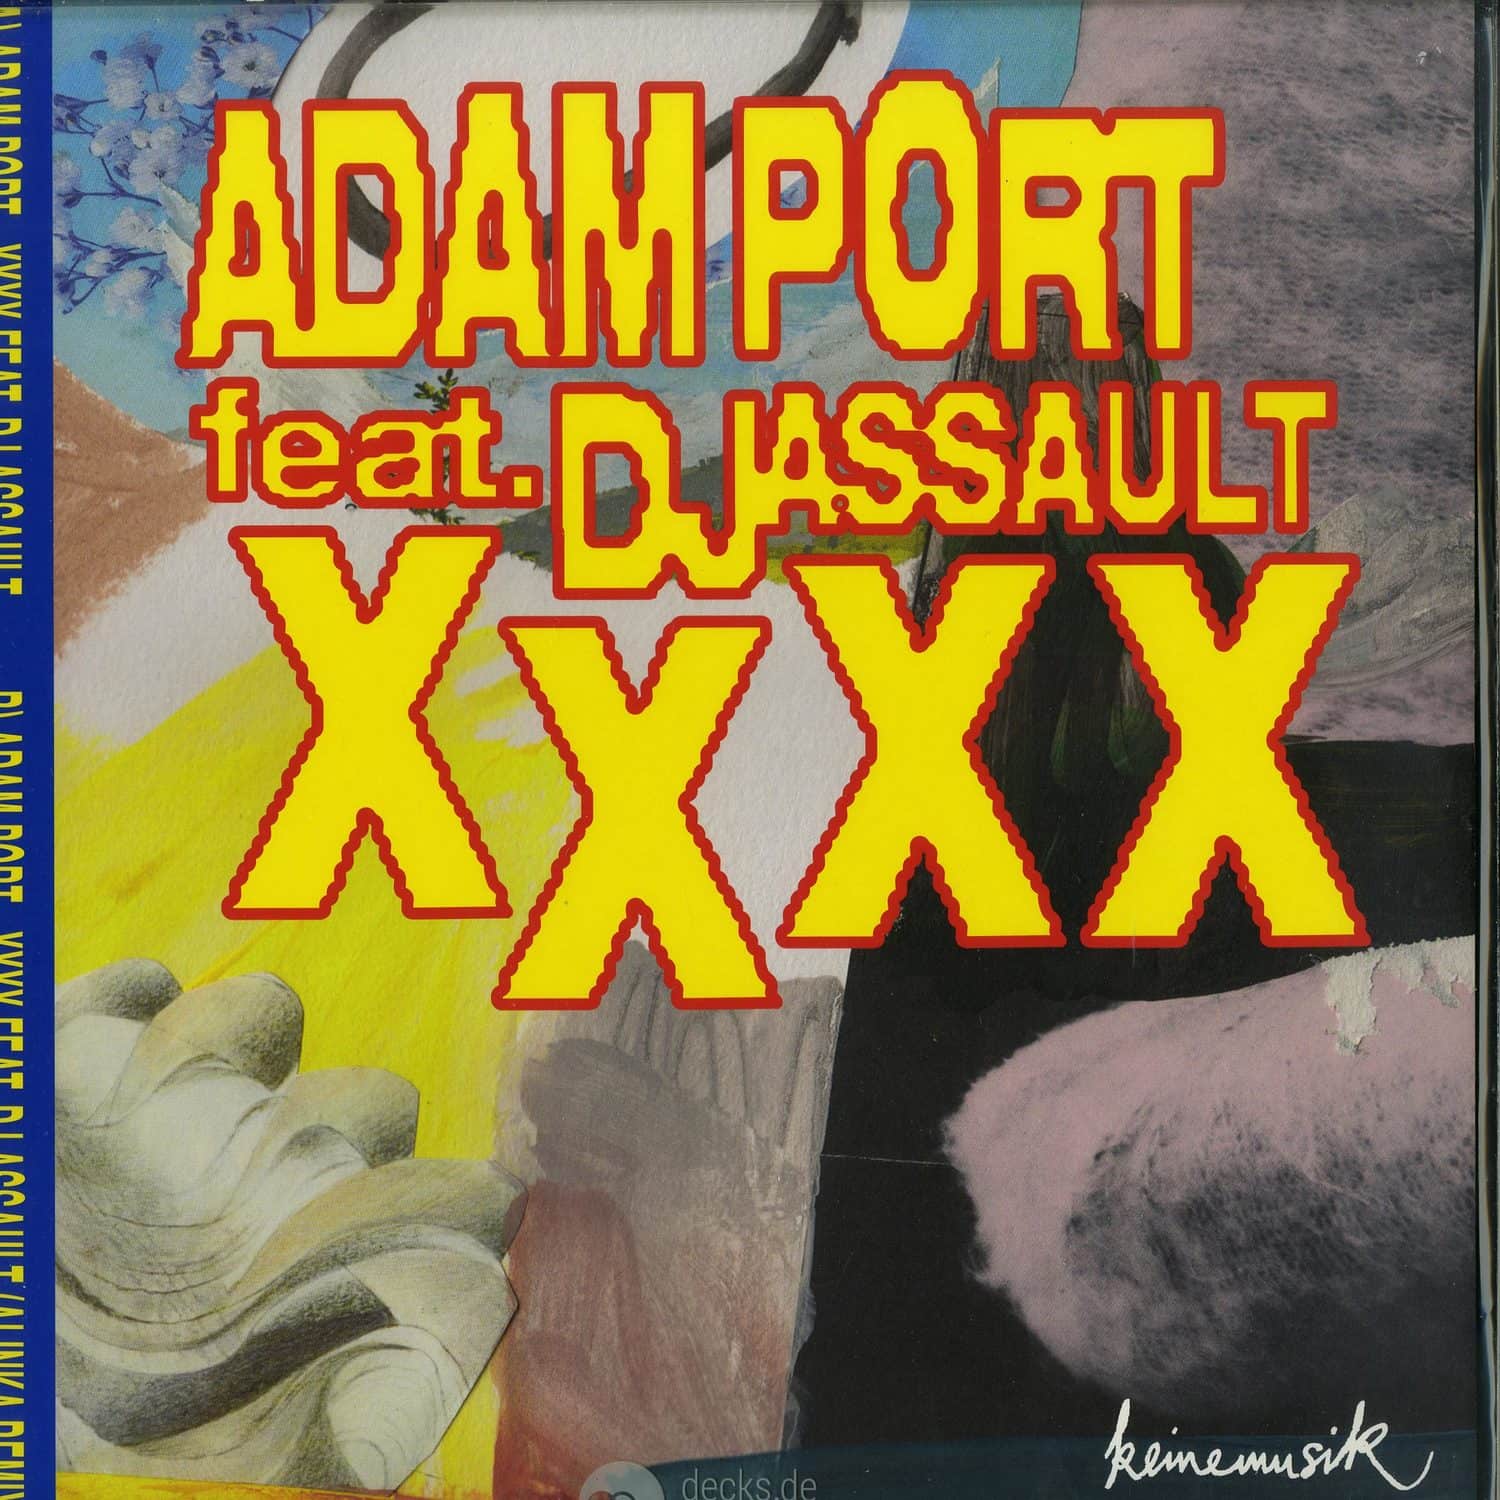 Adam Port feat. DJ Assault - XXXX